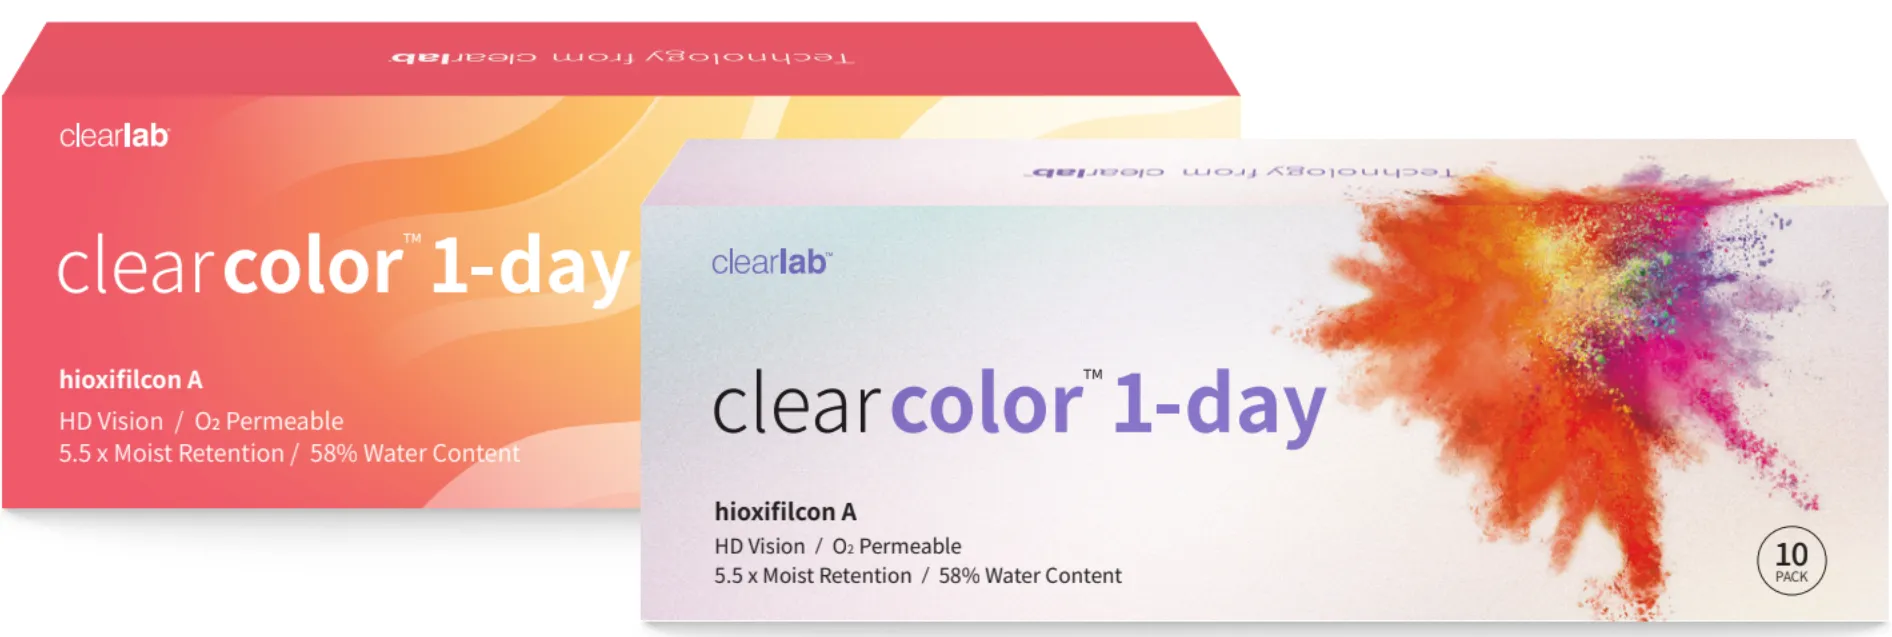 ClearLab ClearColor 1-Day kolorowe soczewki kontaktowe szare -1,75, 10 szt.